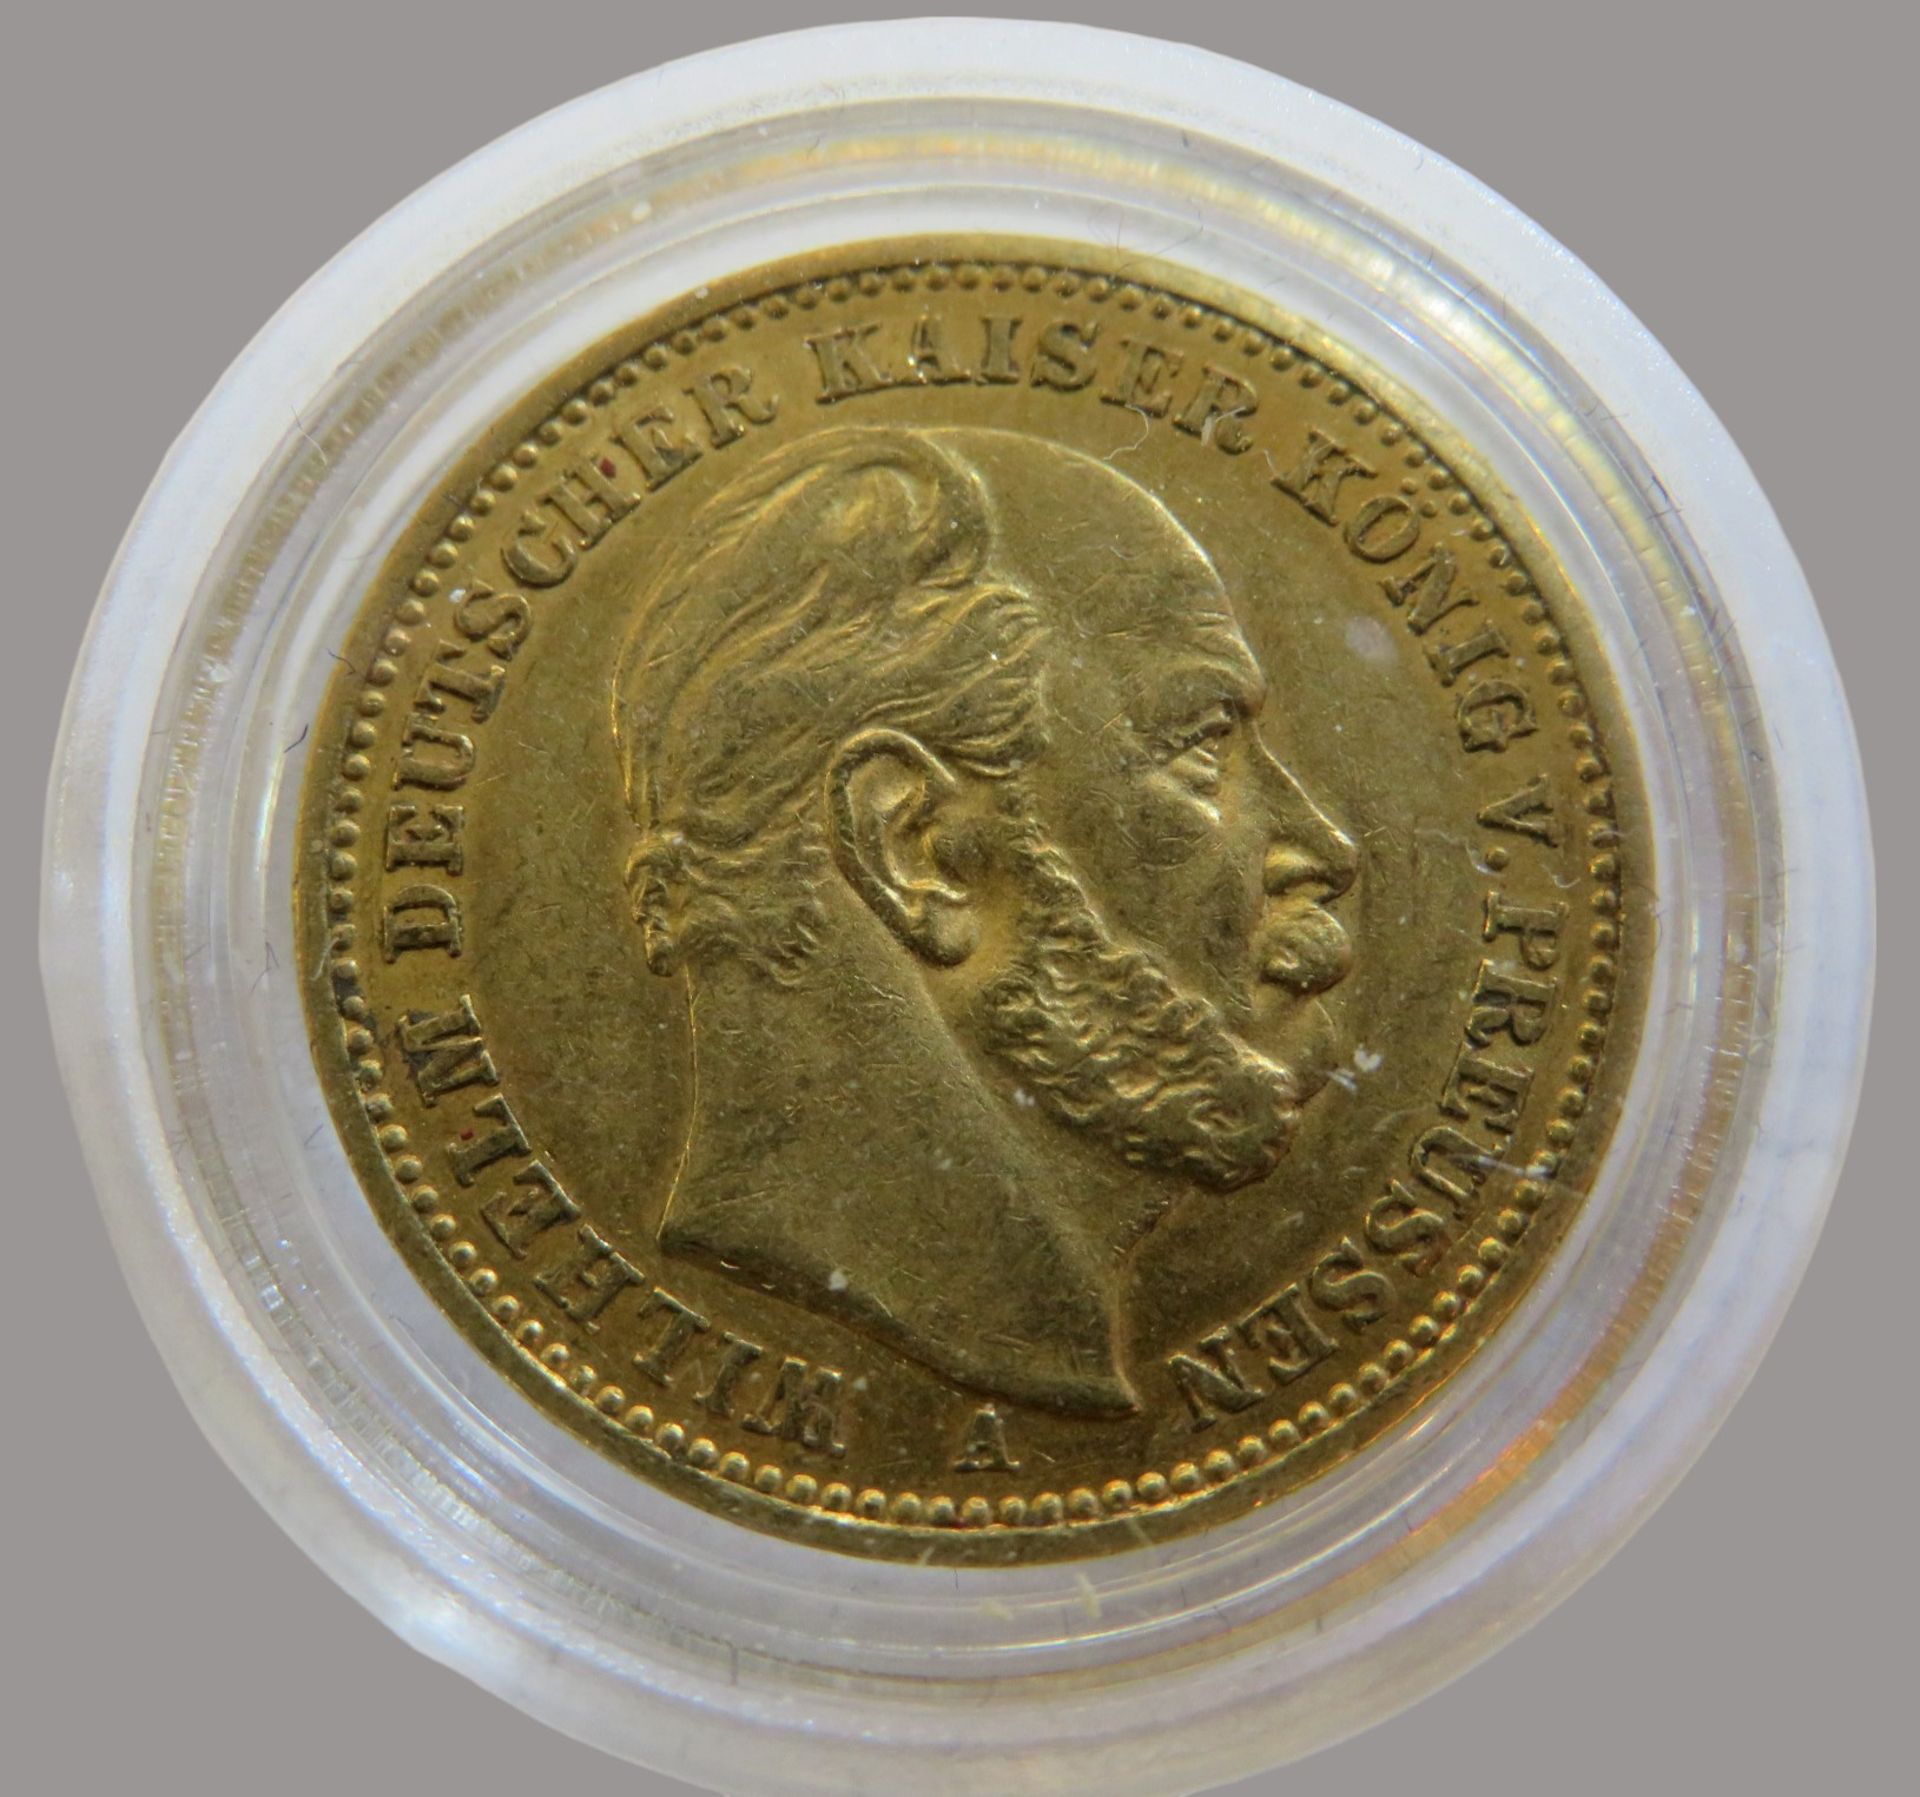 Goldmünze, 20 Mark, Wilhelm I. König von Preussen, 1887A, Gold 900/000, 7,96 g, J 246, Erhaltungszu